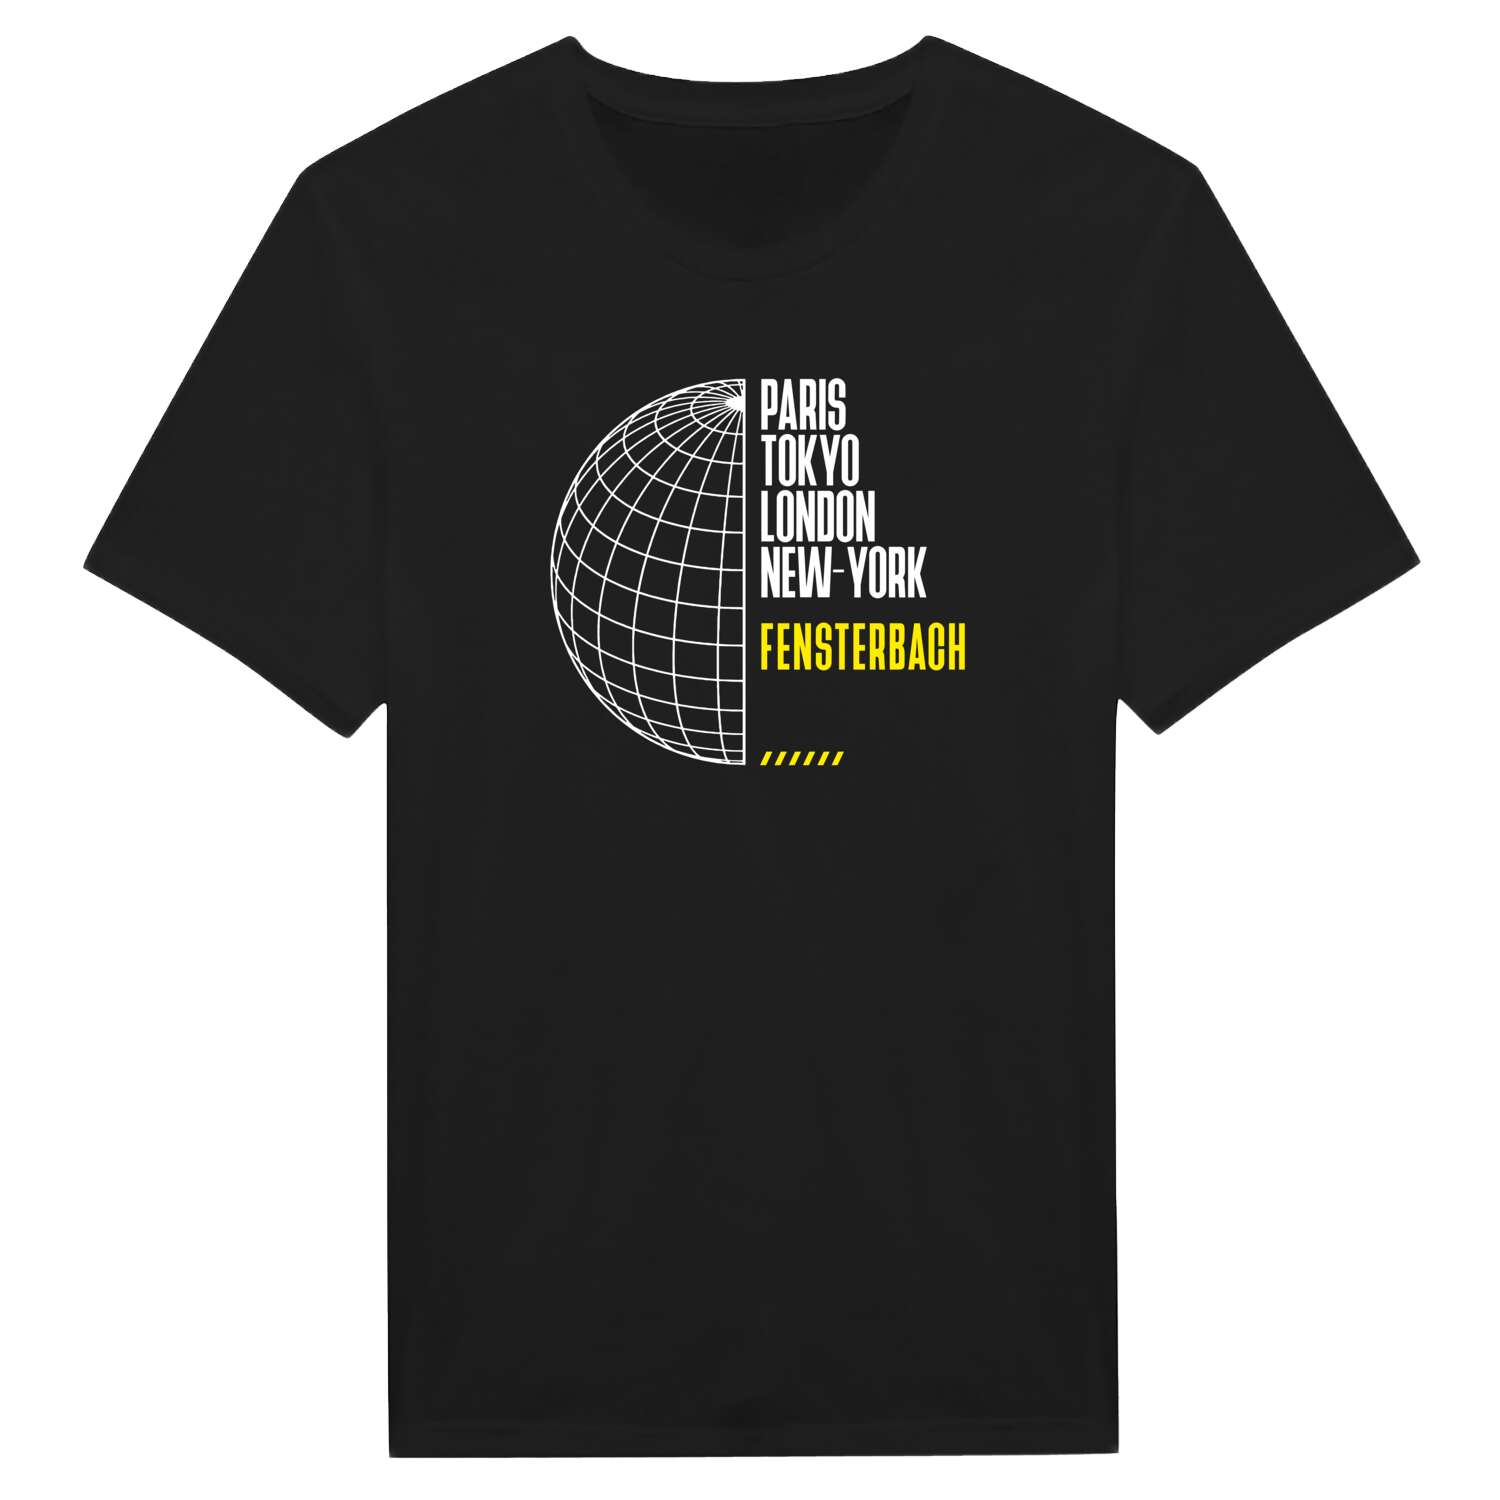 Fensterbach T-Shirt »Paris Tokyo London«